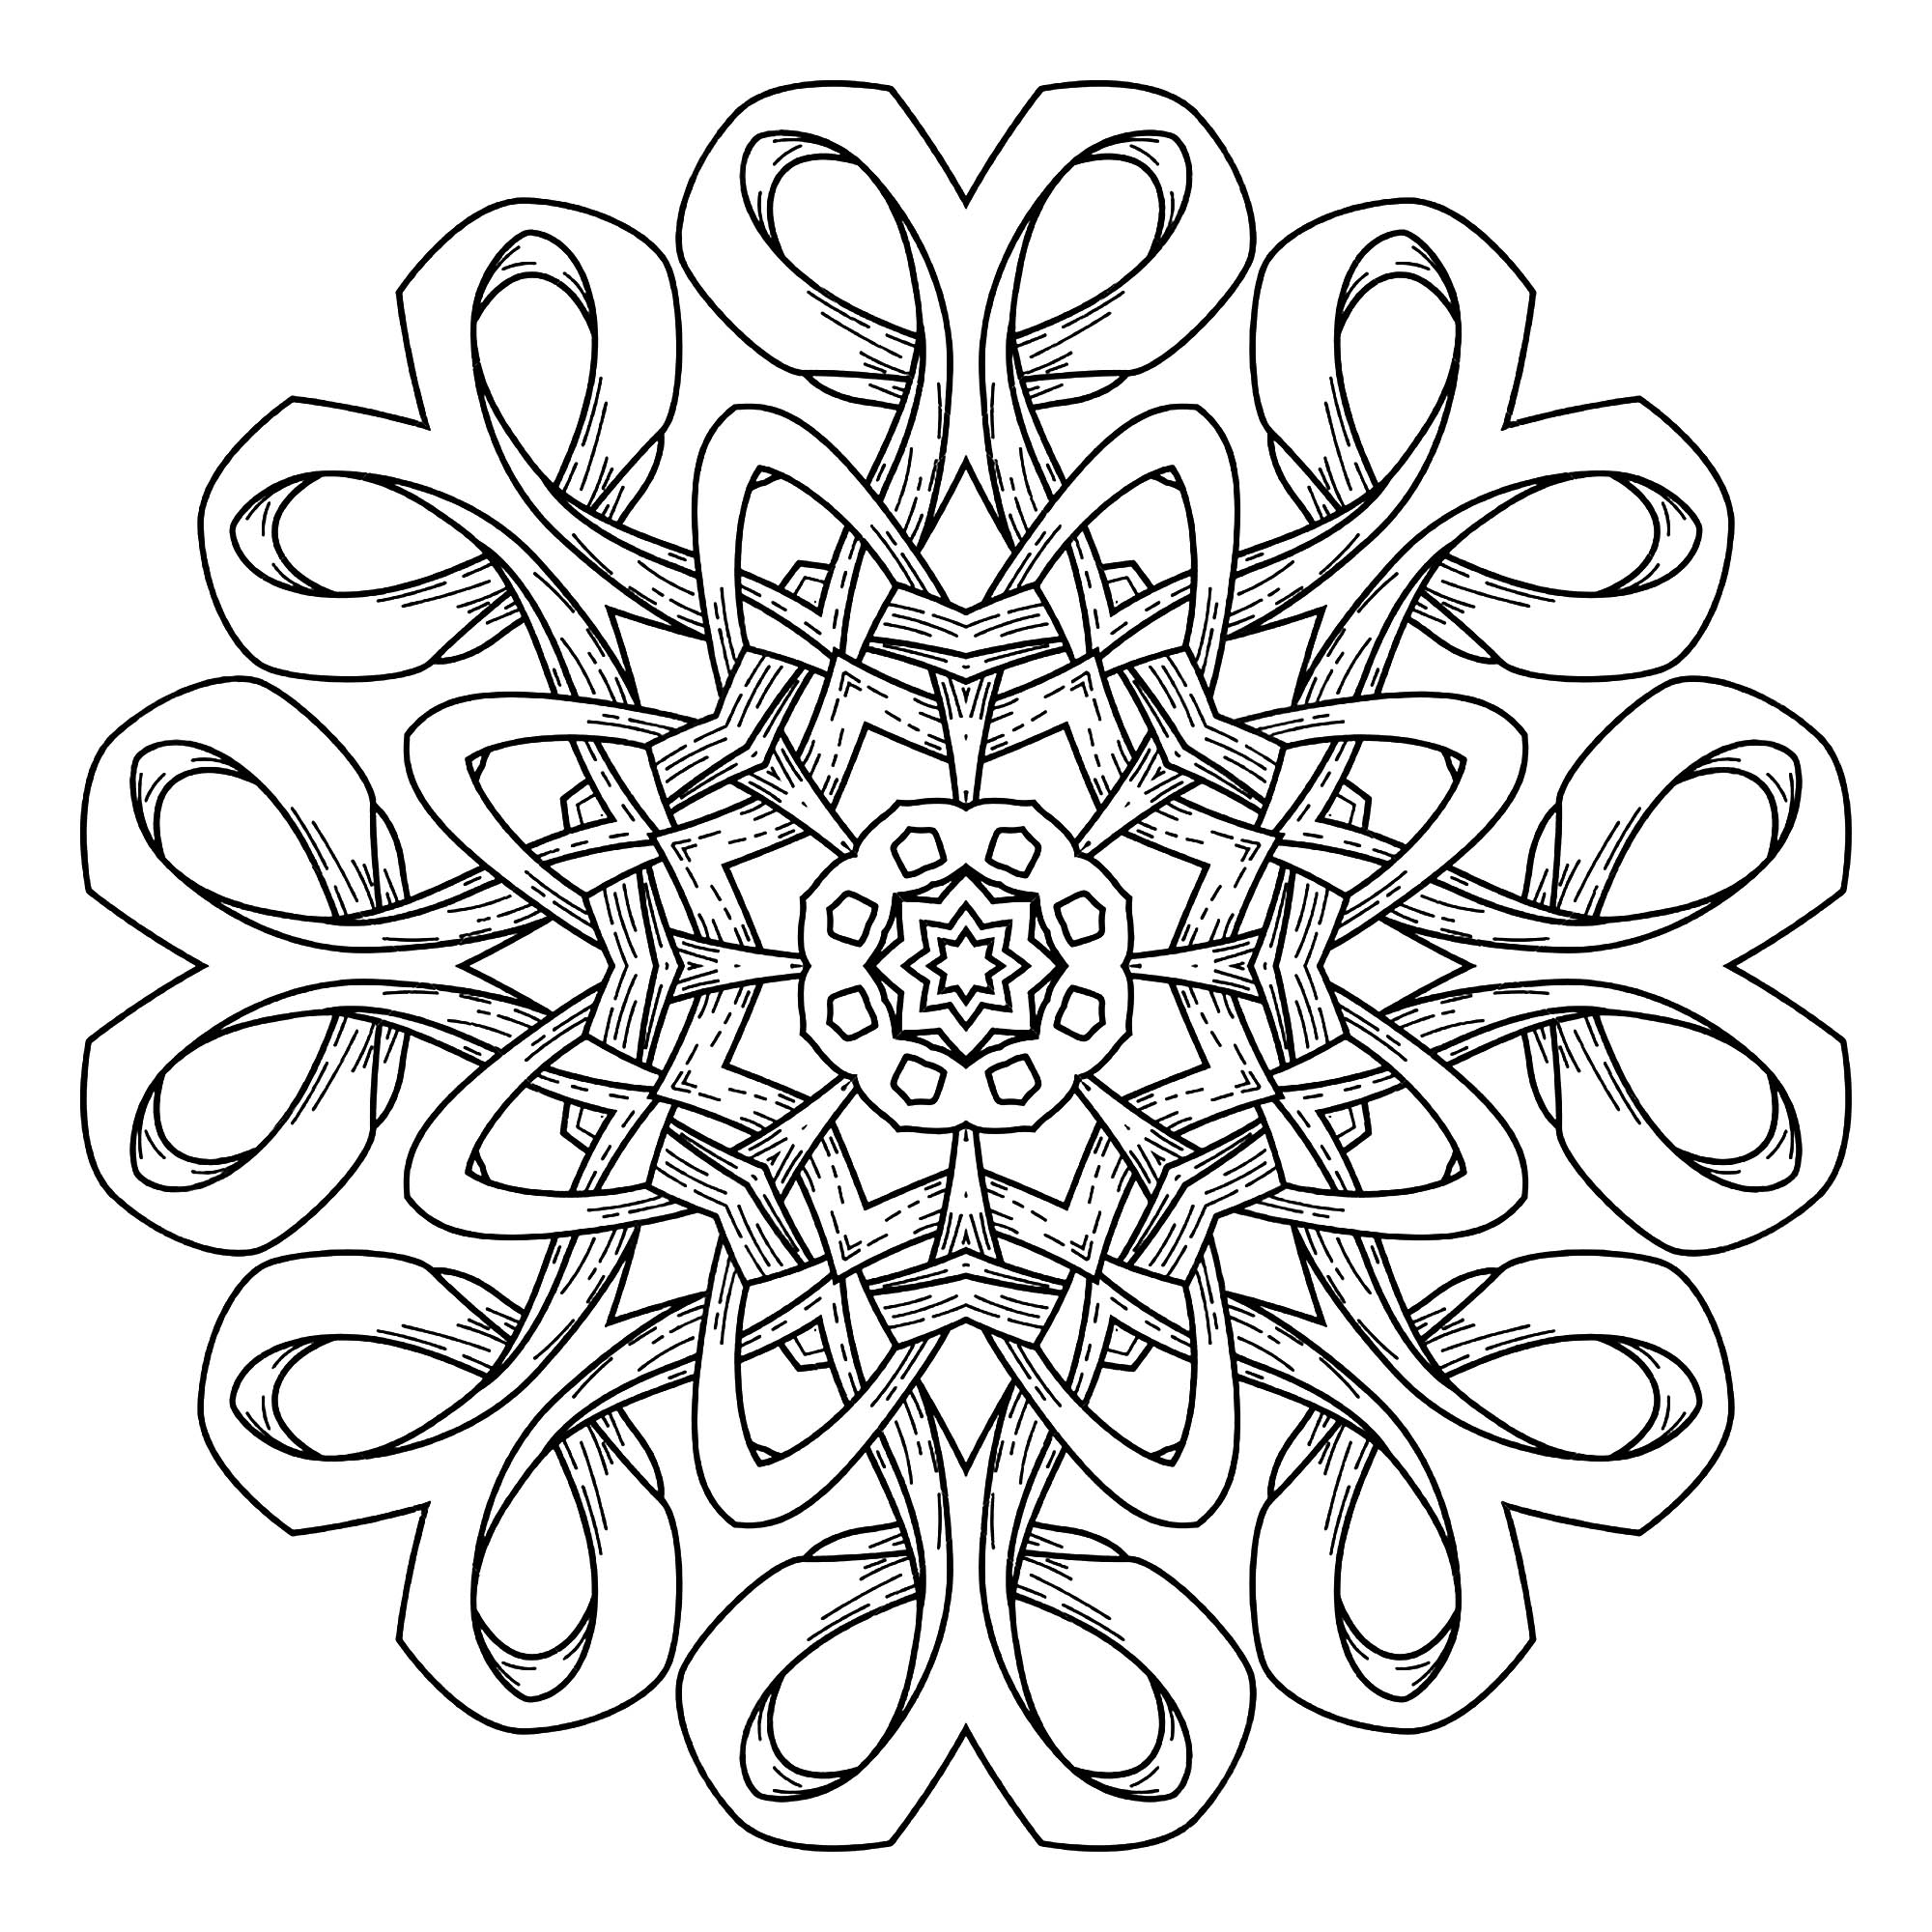 Download Abstract decorative Mandala - Mandalas Adult Coloring Pages